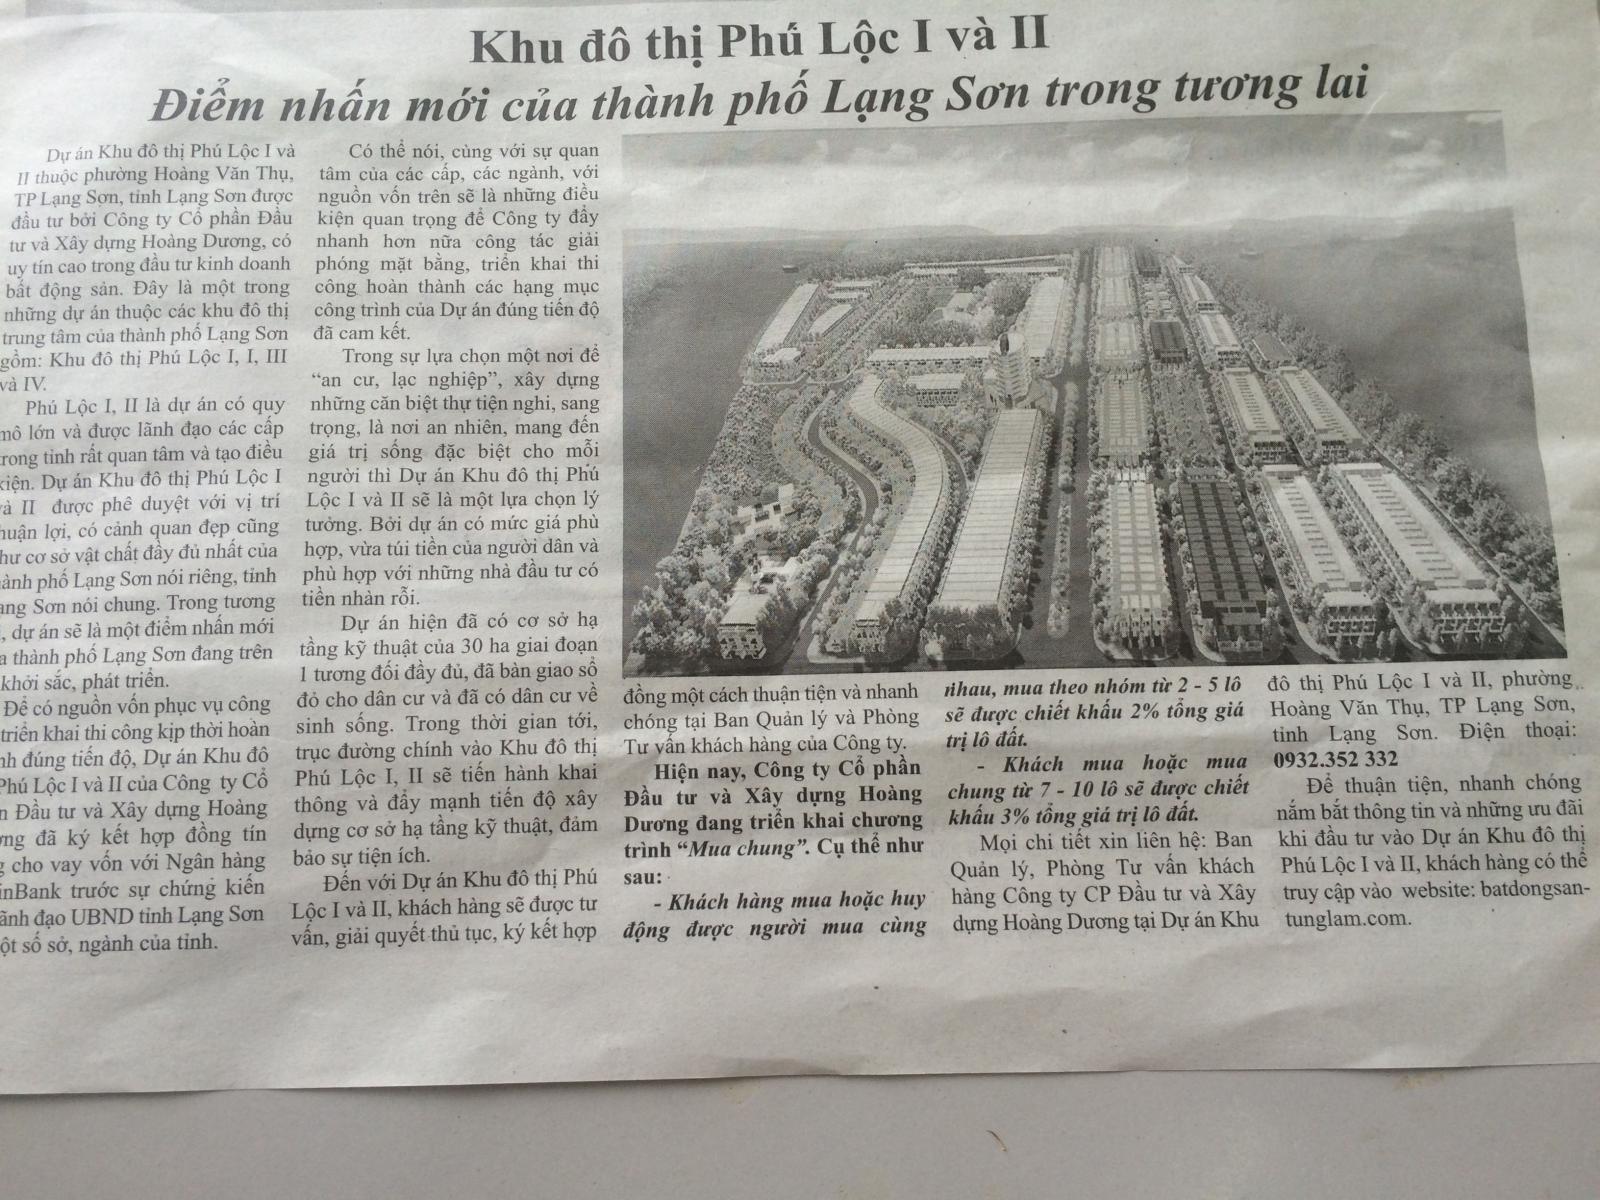 Khu đô thị Phú Lộc 1 và 2 lên báo Lạng Sơn